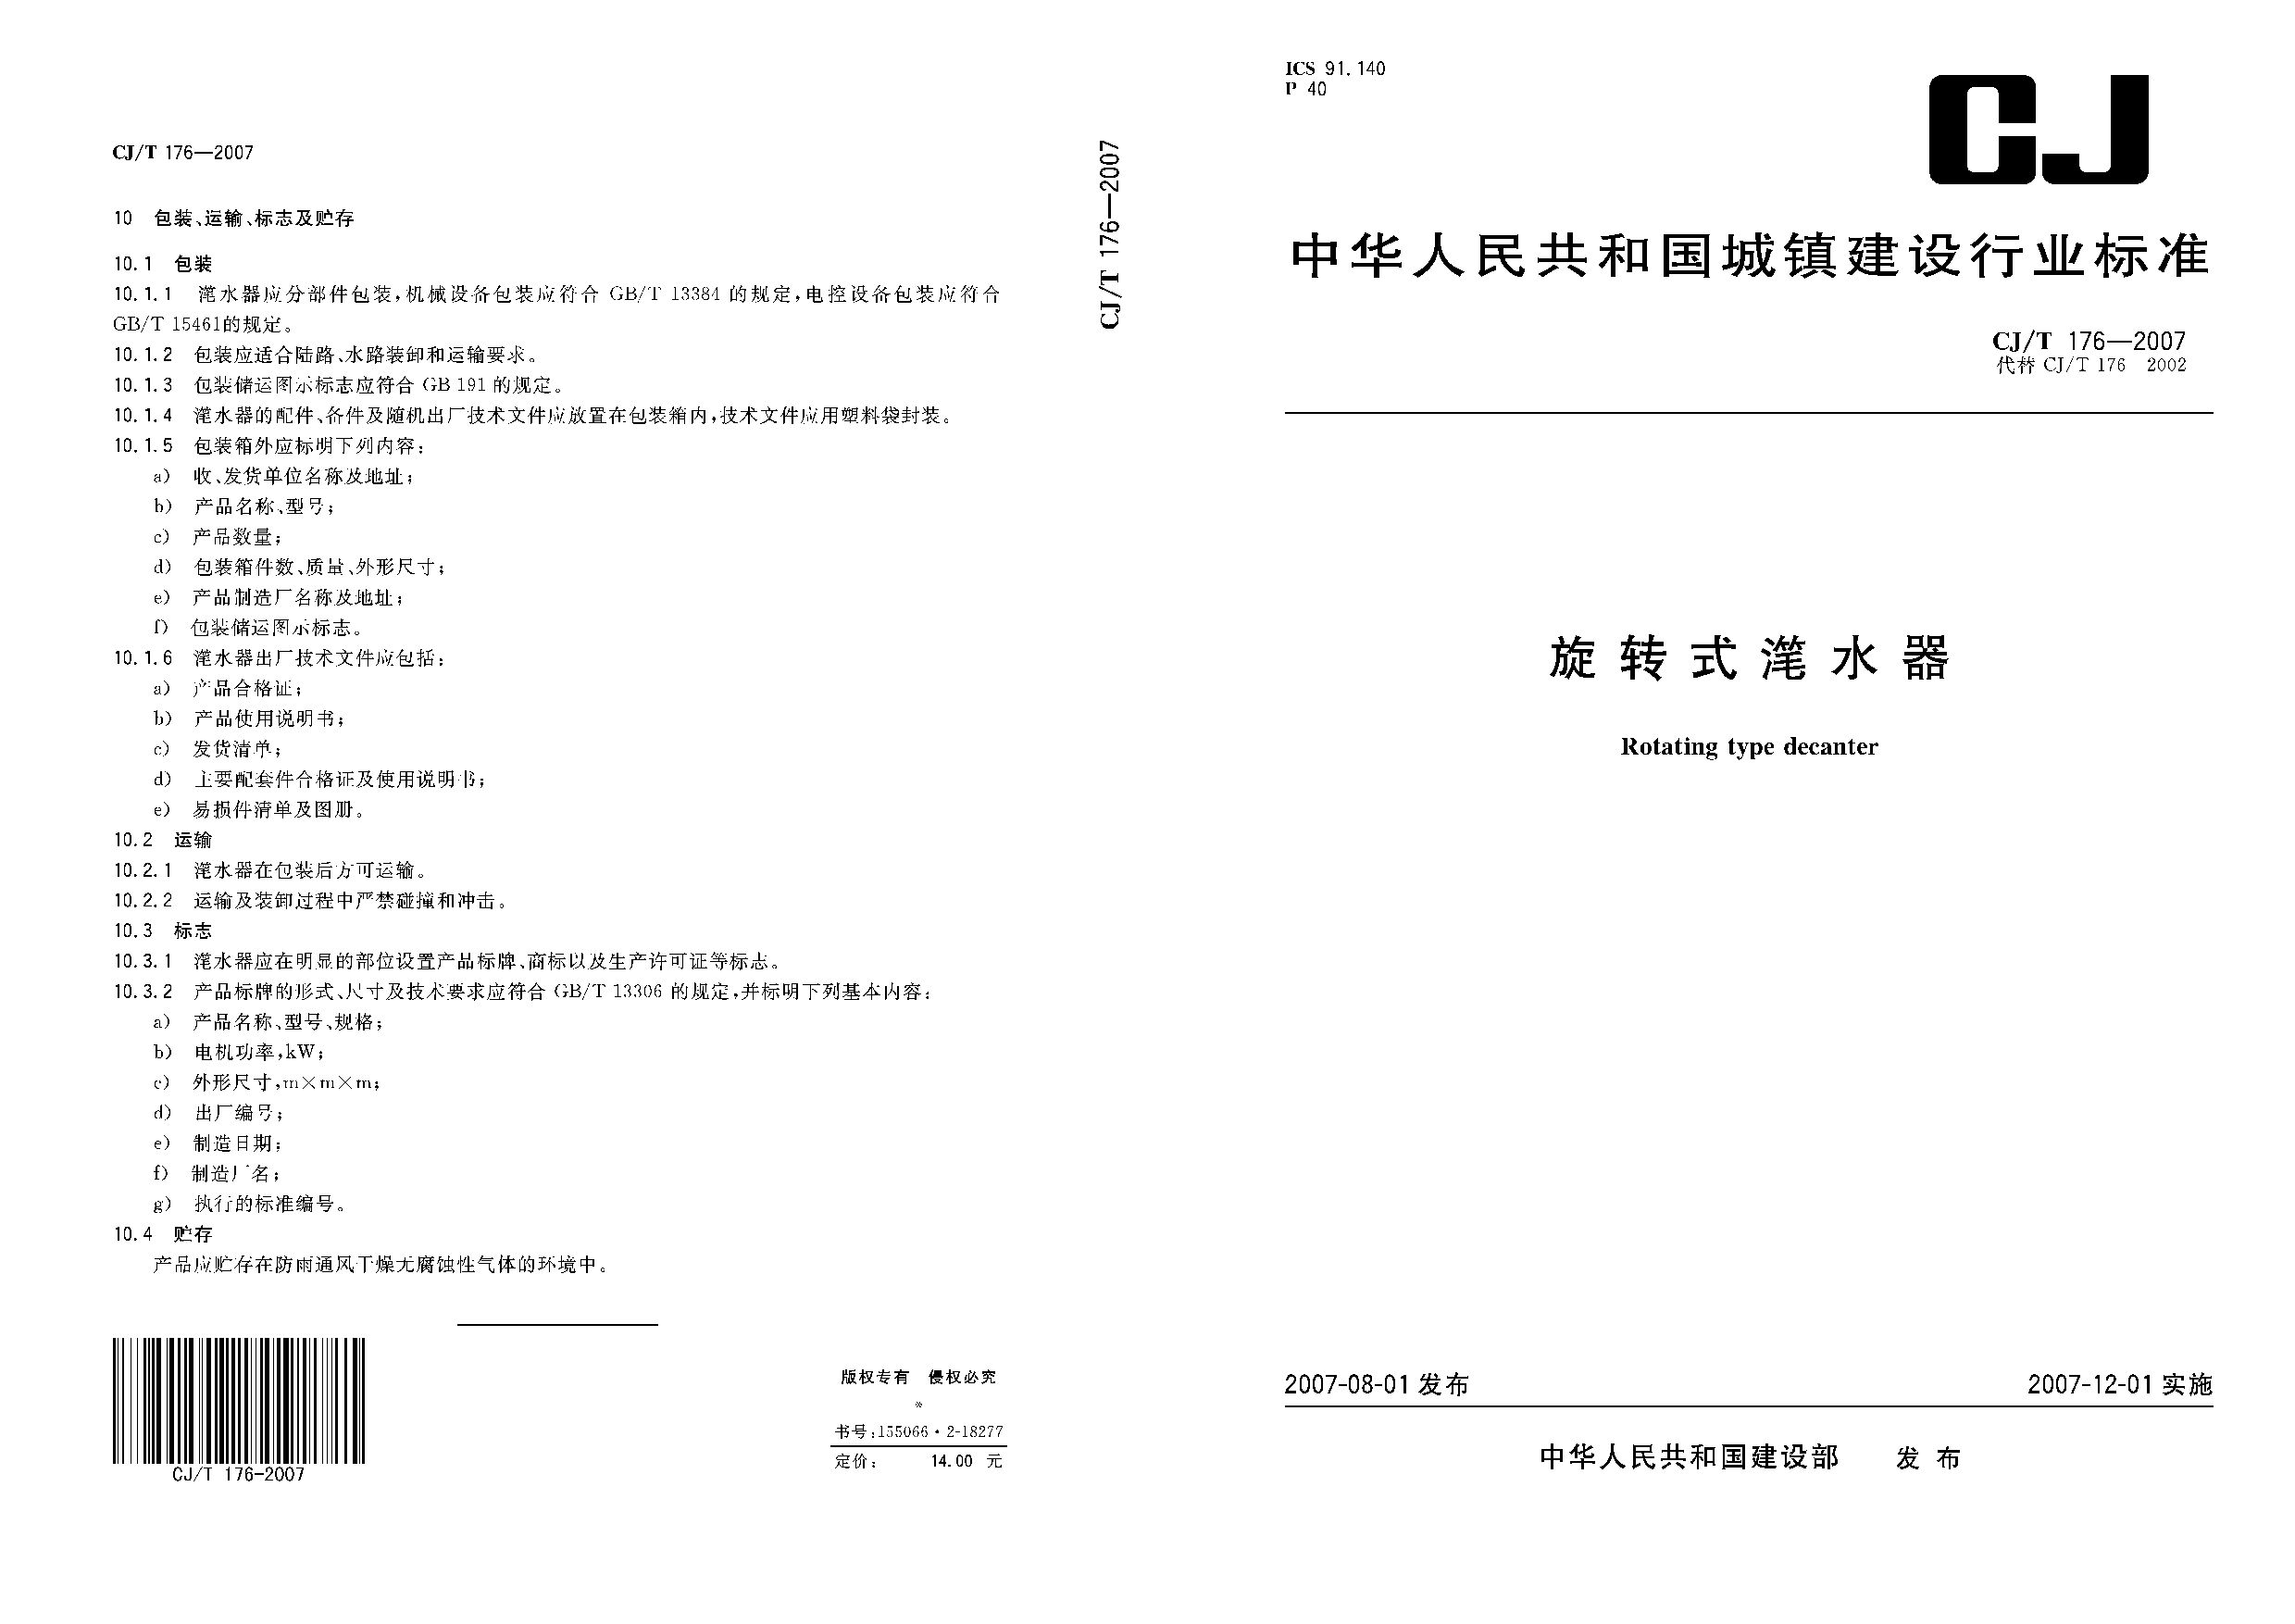 CJ/T 176-2007封面图